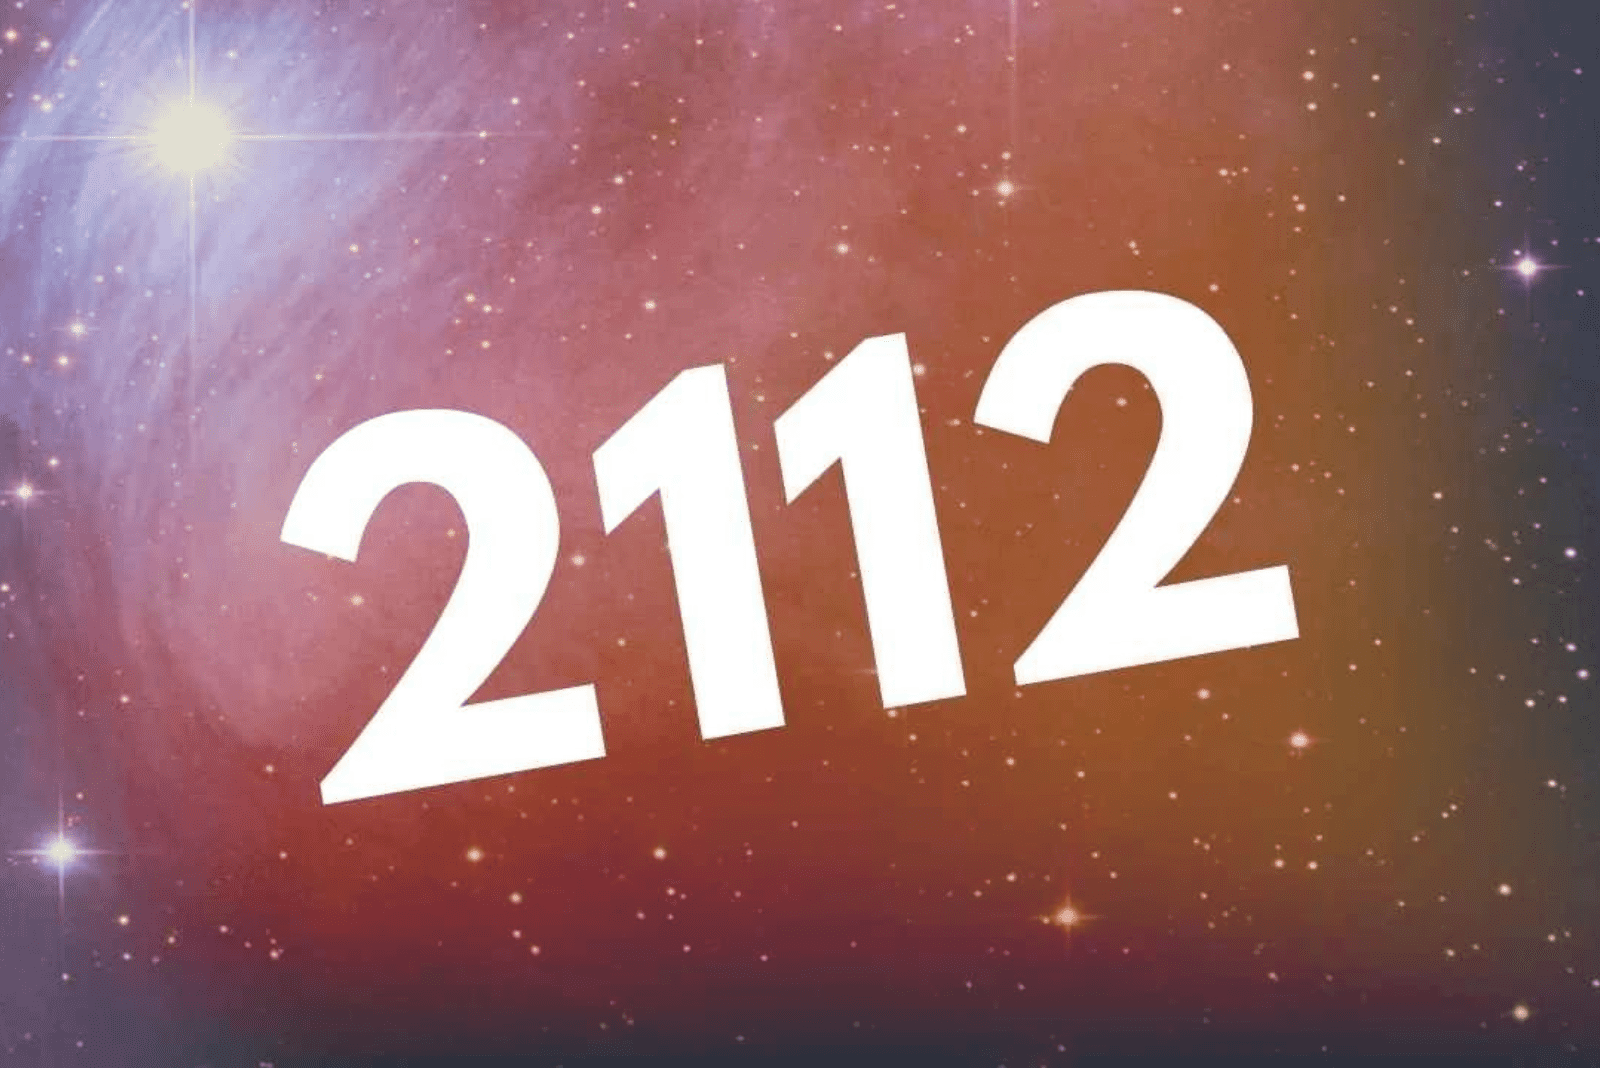 2112 auf einem Sternsockel